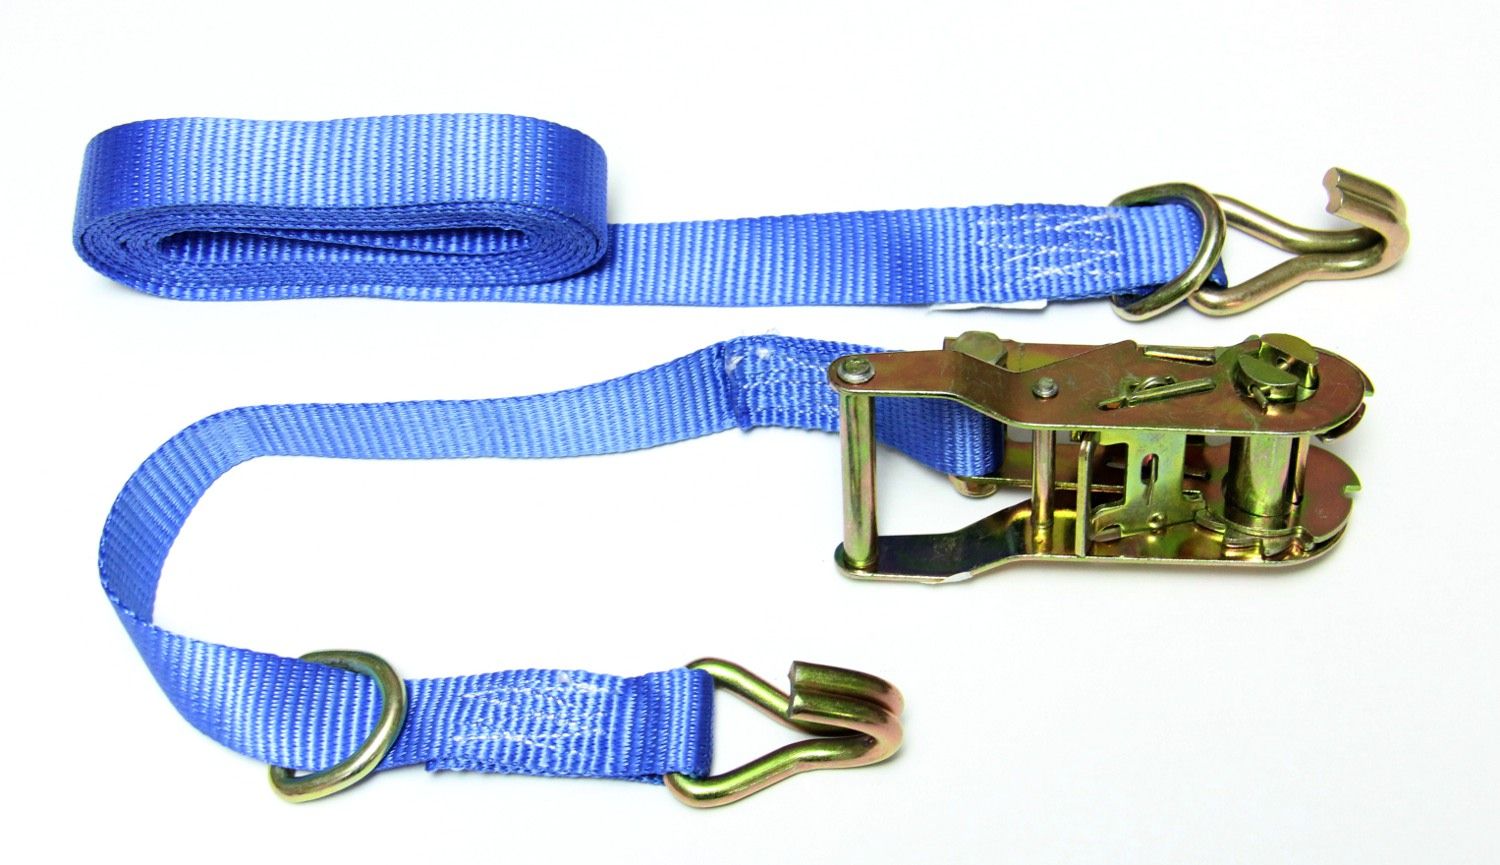 Blue ratchet strap (tie downs)